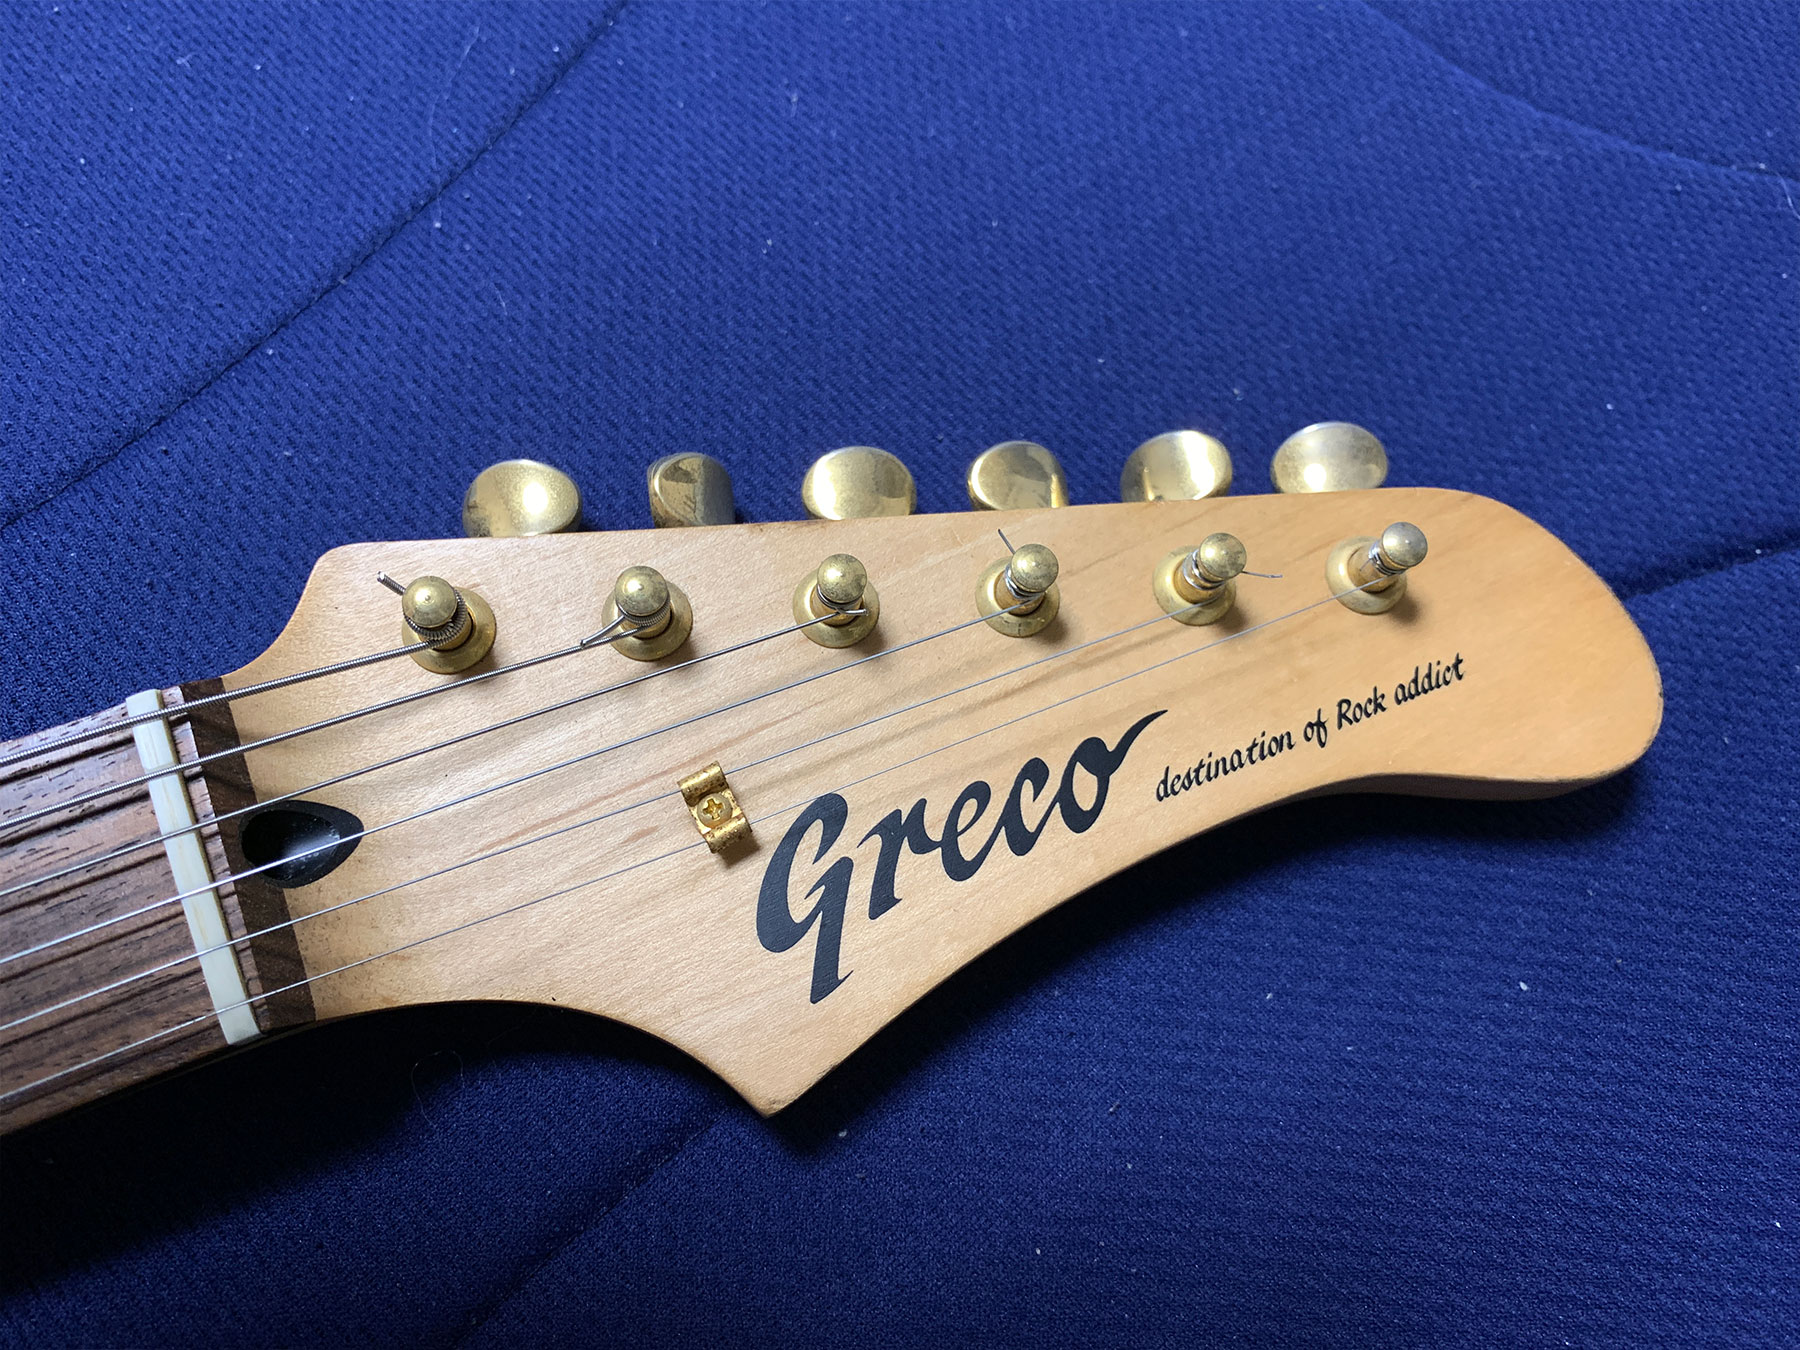 中古のグレコギターを買ってみた GRECO destination of rock addict